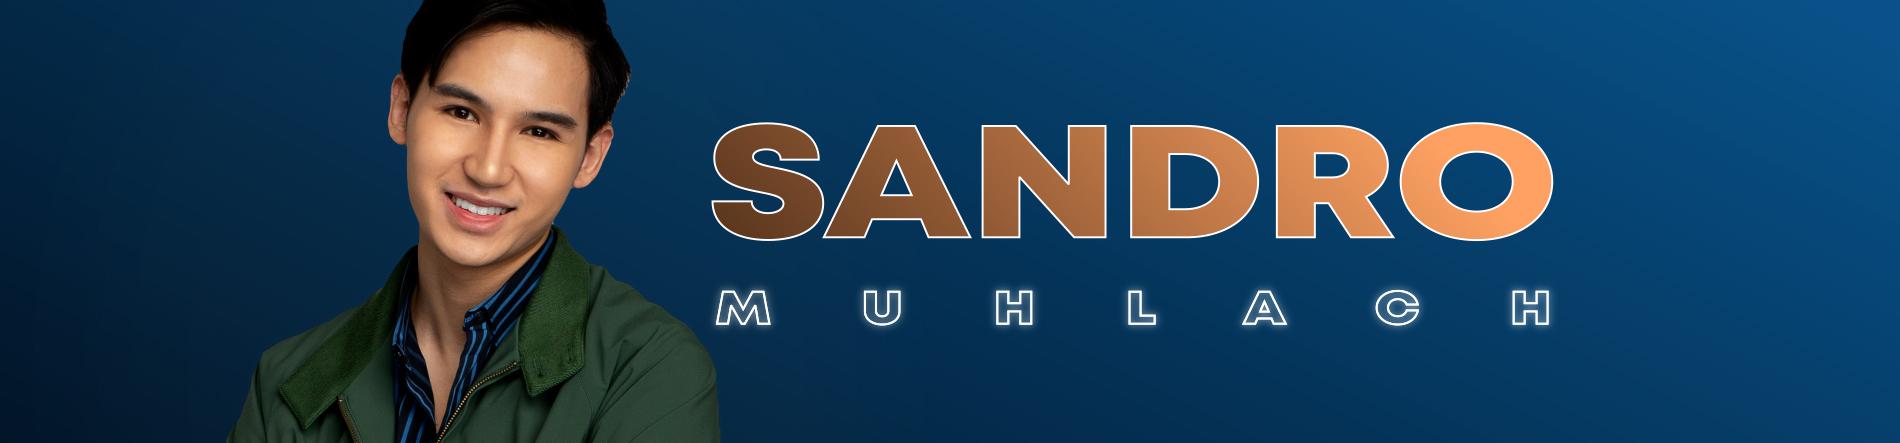 Sandro Muhlach Desktop Banner